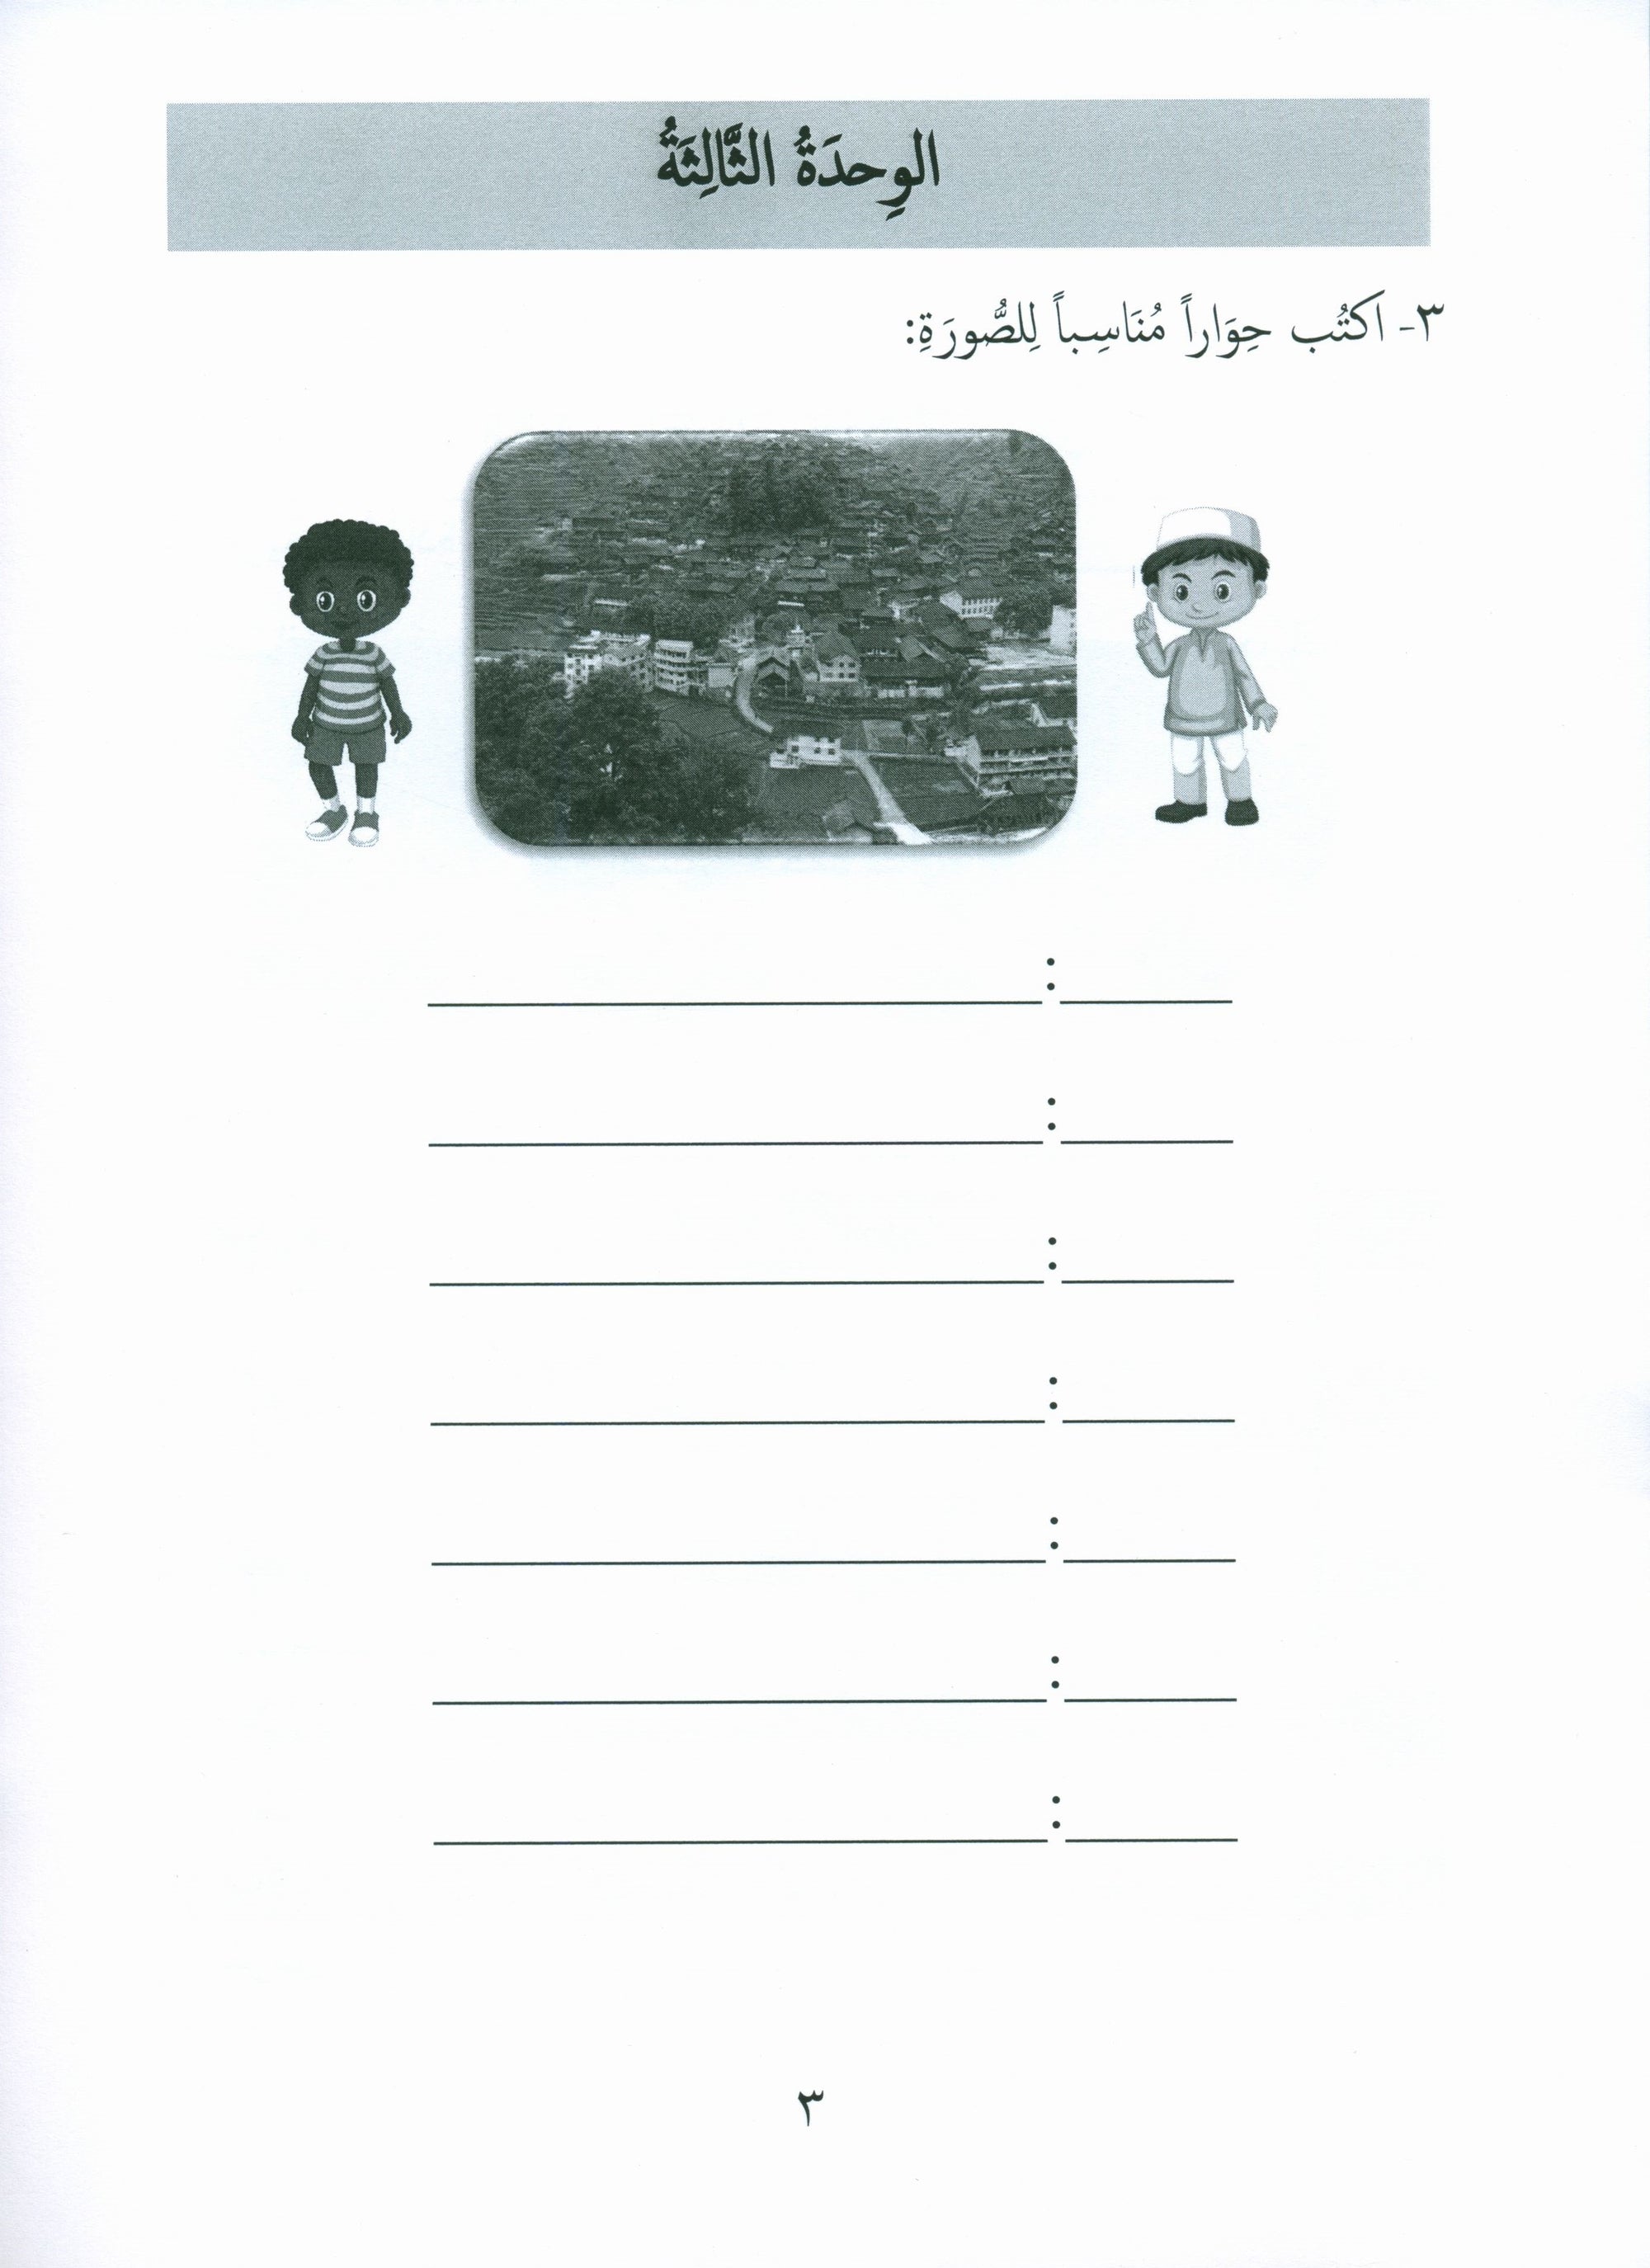 Gems of Arabic Assessment Level 6